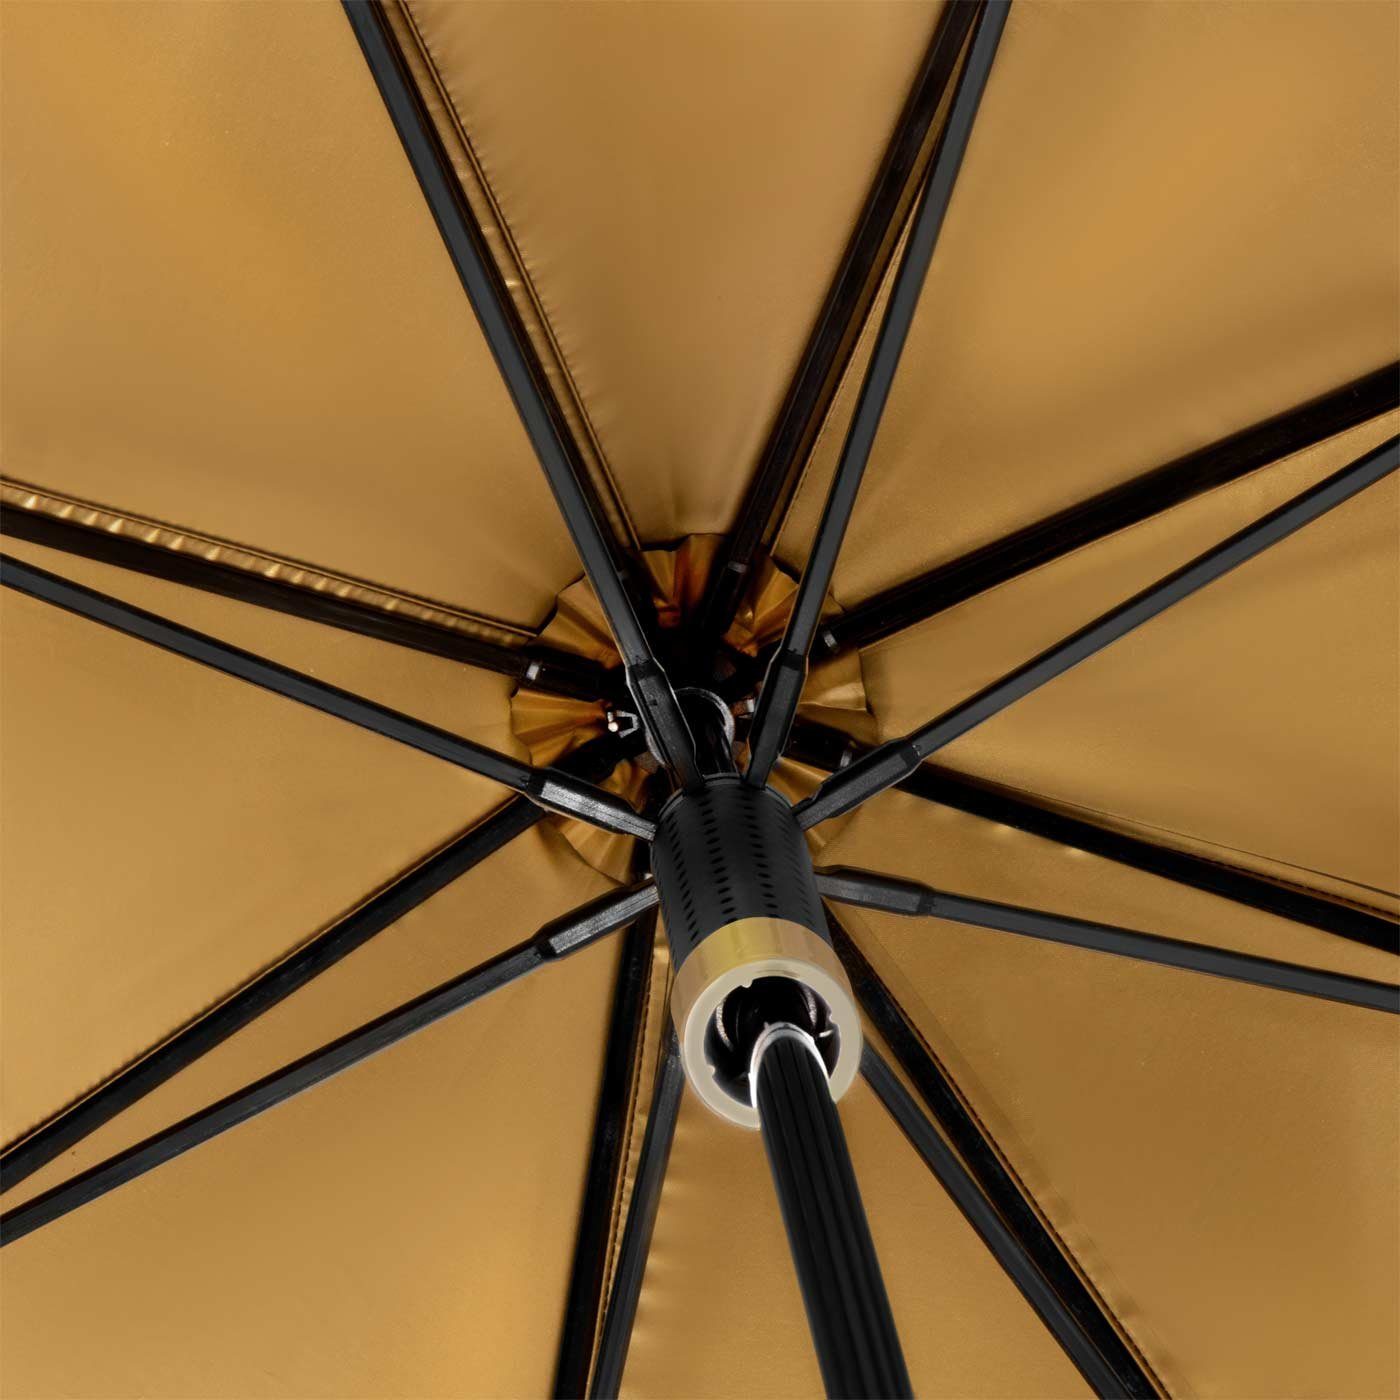 Impliva Stockregenschirm STORMaxi seine zu den aus in Schirm besondere Sturmschirm hält Form aerodynamischer durch Wind, bis 80 Metallic, der schwarz-gold sich km/h dreht